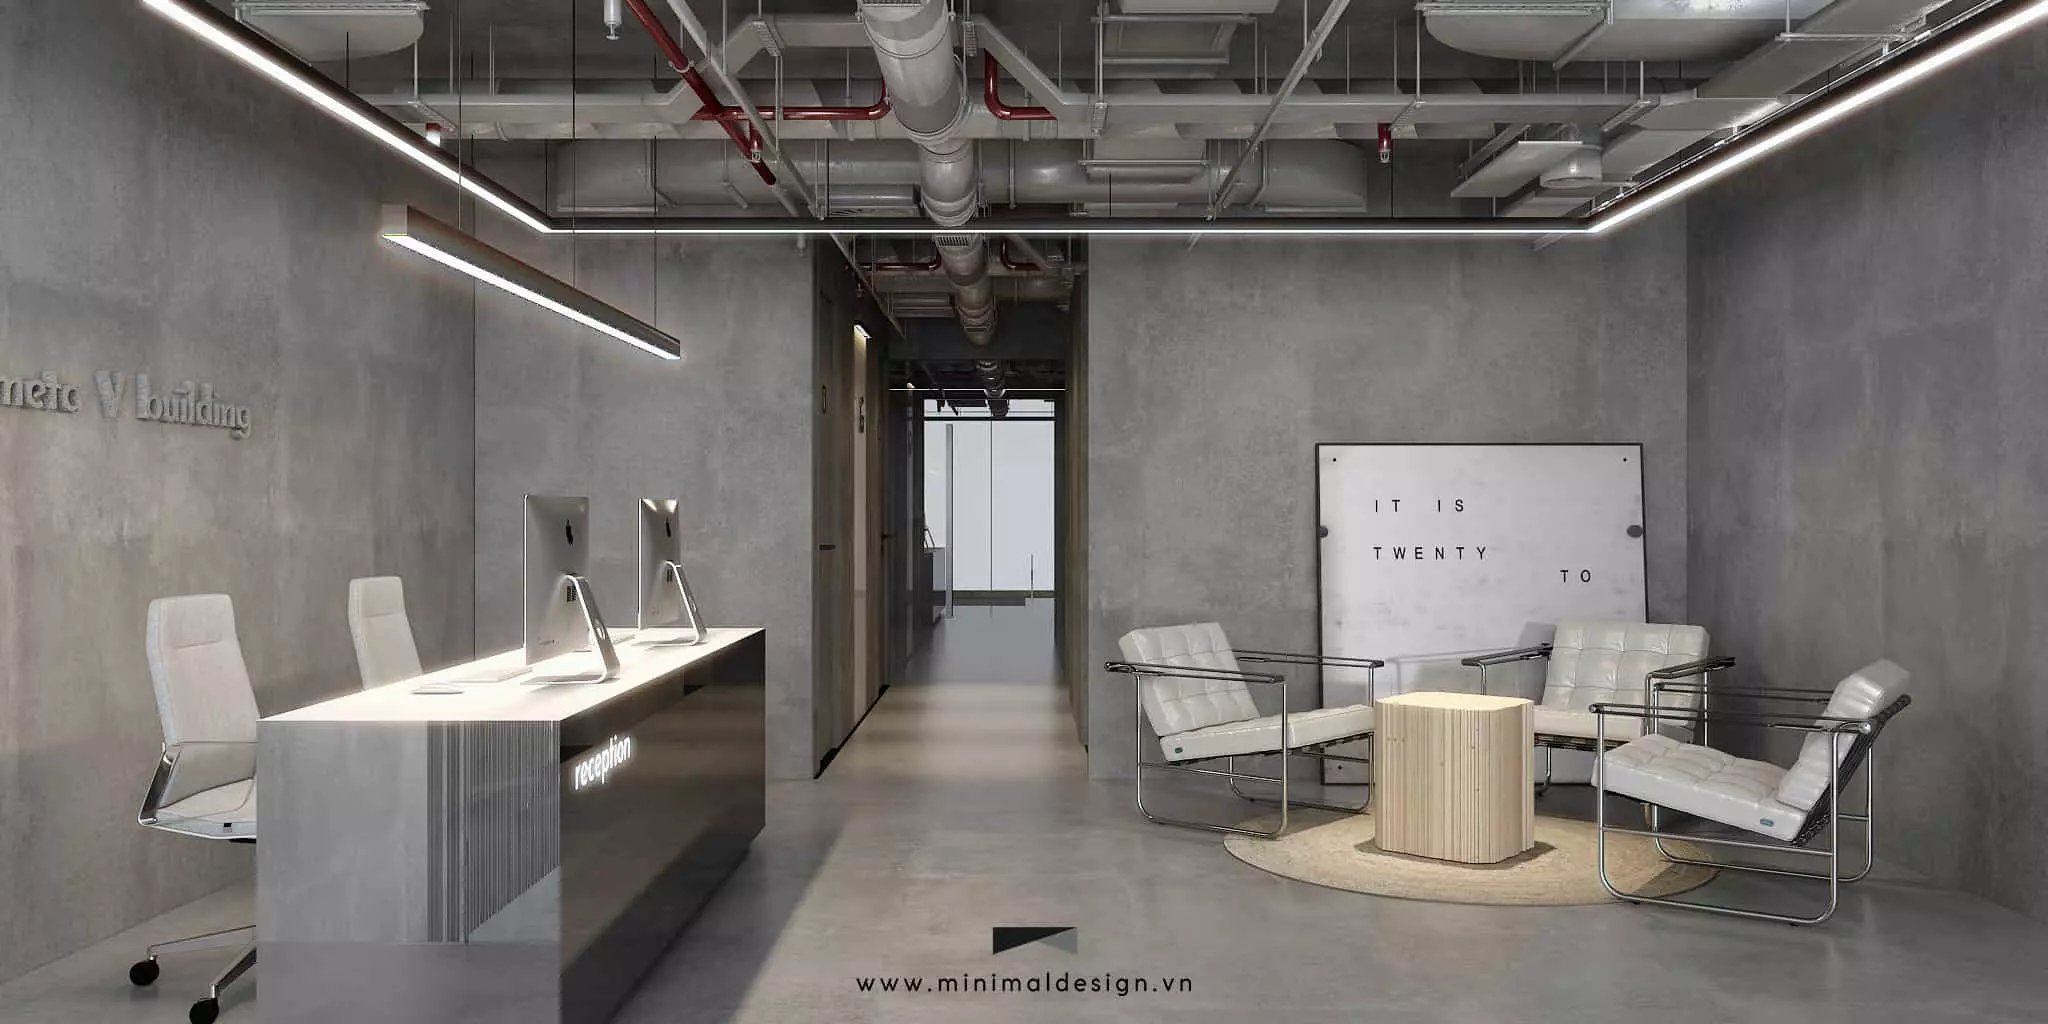 Thiết kế thi công nội thất văn phòng tối giản mang đến một không gian làm việc kiểu mới giúp cân bằng giữa thư giãn và tiện ích, công năng của văn phòng.